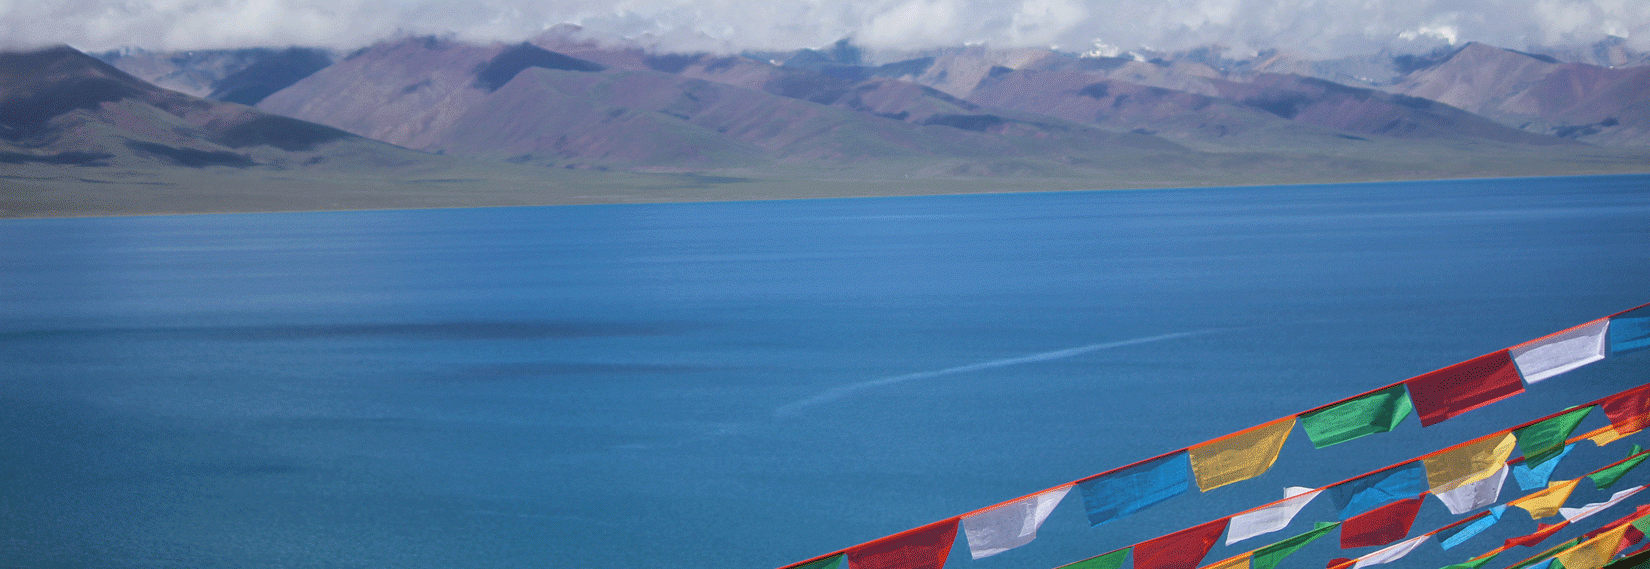 Alpine Lake in Tibet 